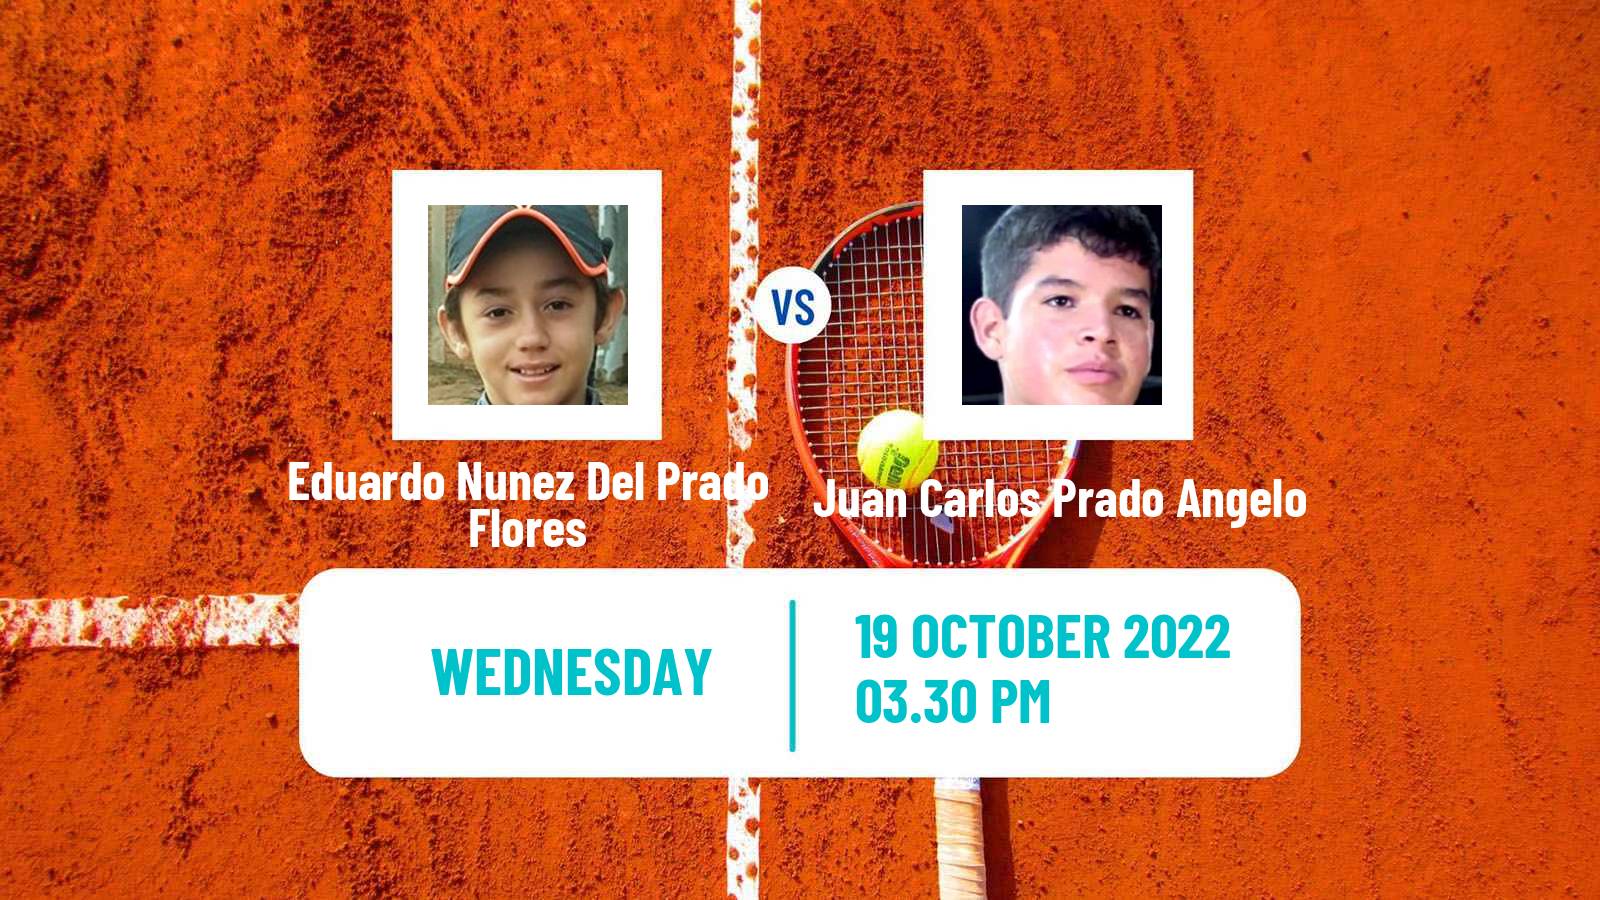 Tennis ITF Tournaments Eduardo Nunez Del Prado Flores - Juan Carlos Prado Angelo